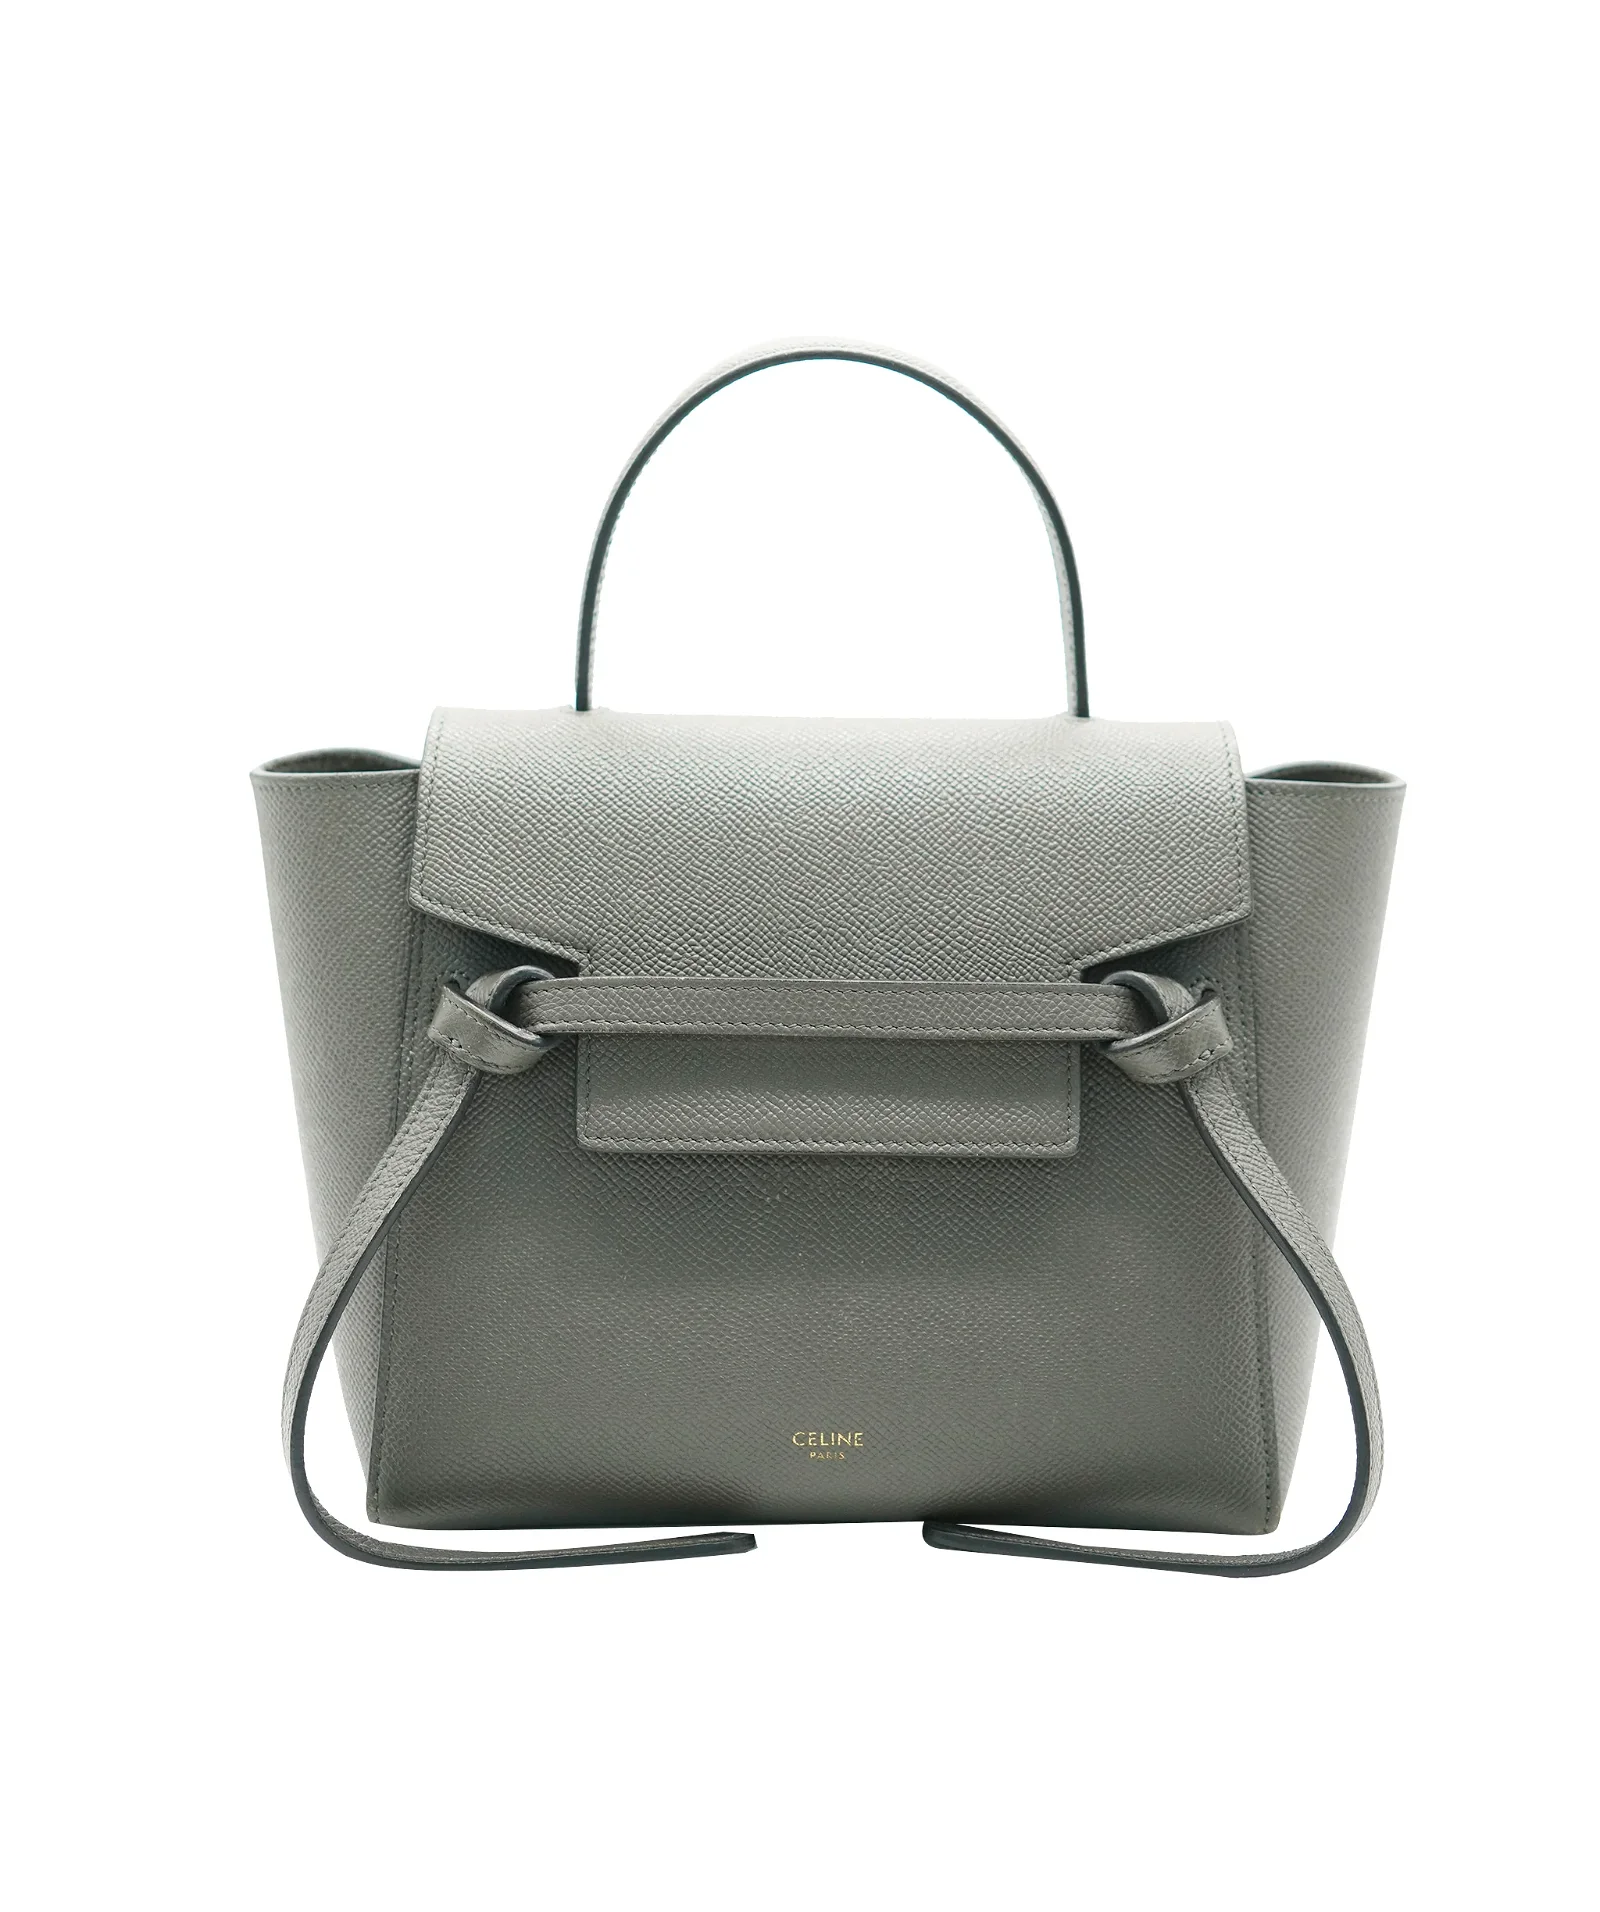 Image of Celine Belt Bag Grey Calfskin Leather Size Nano AGC1647